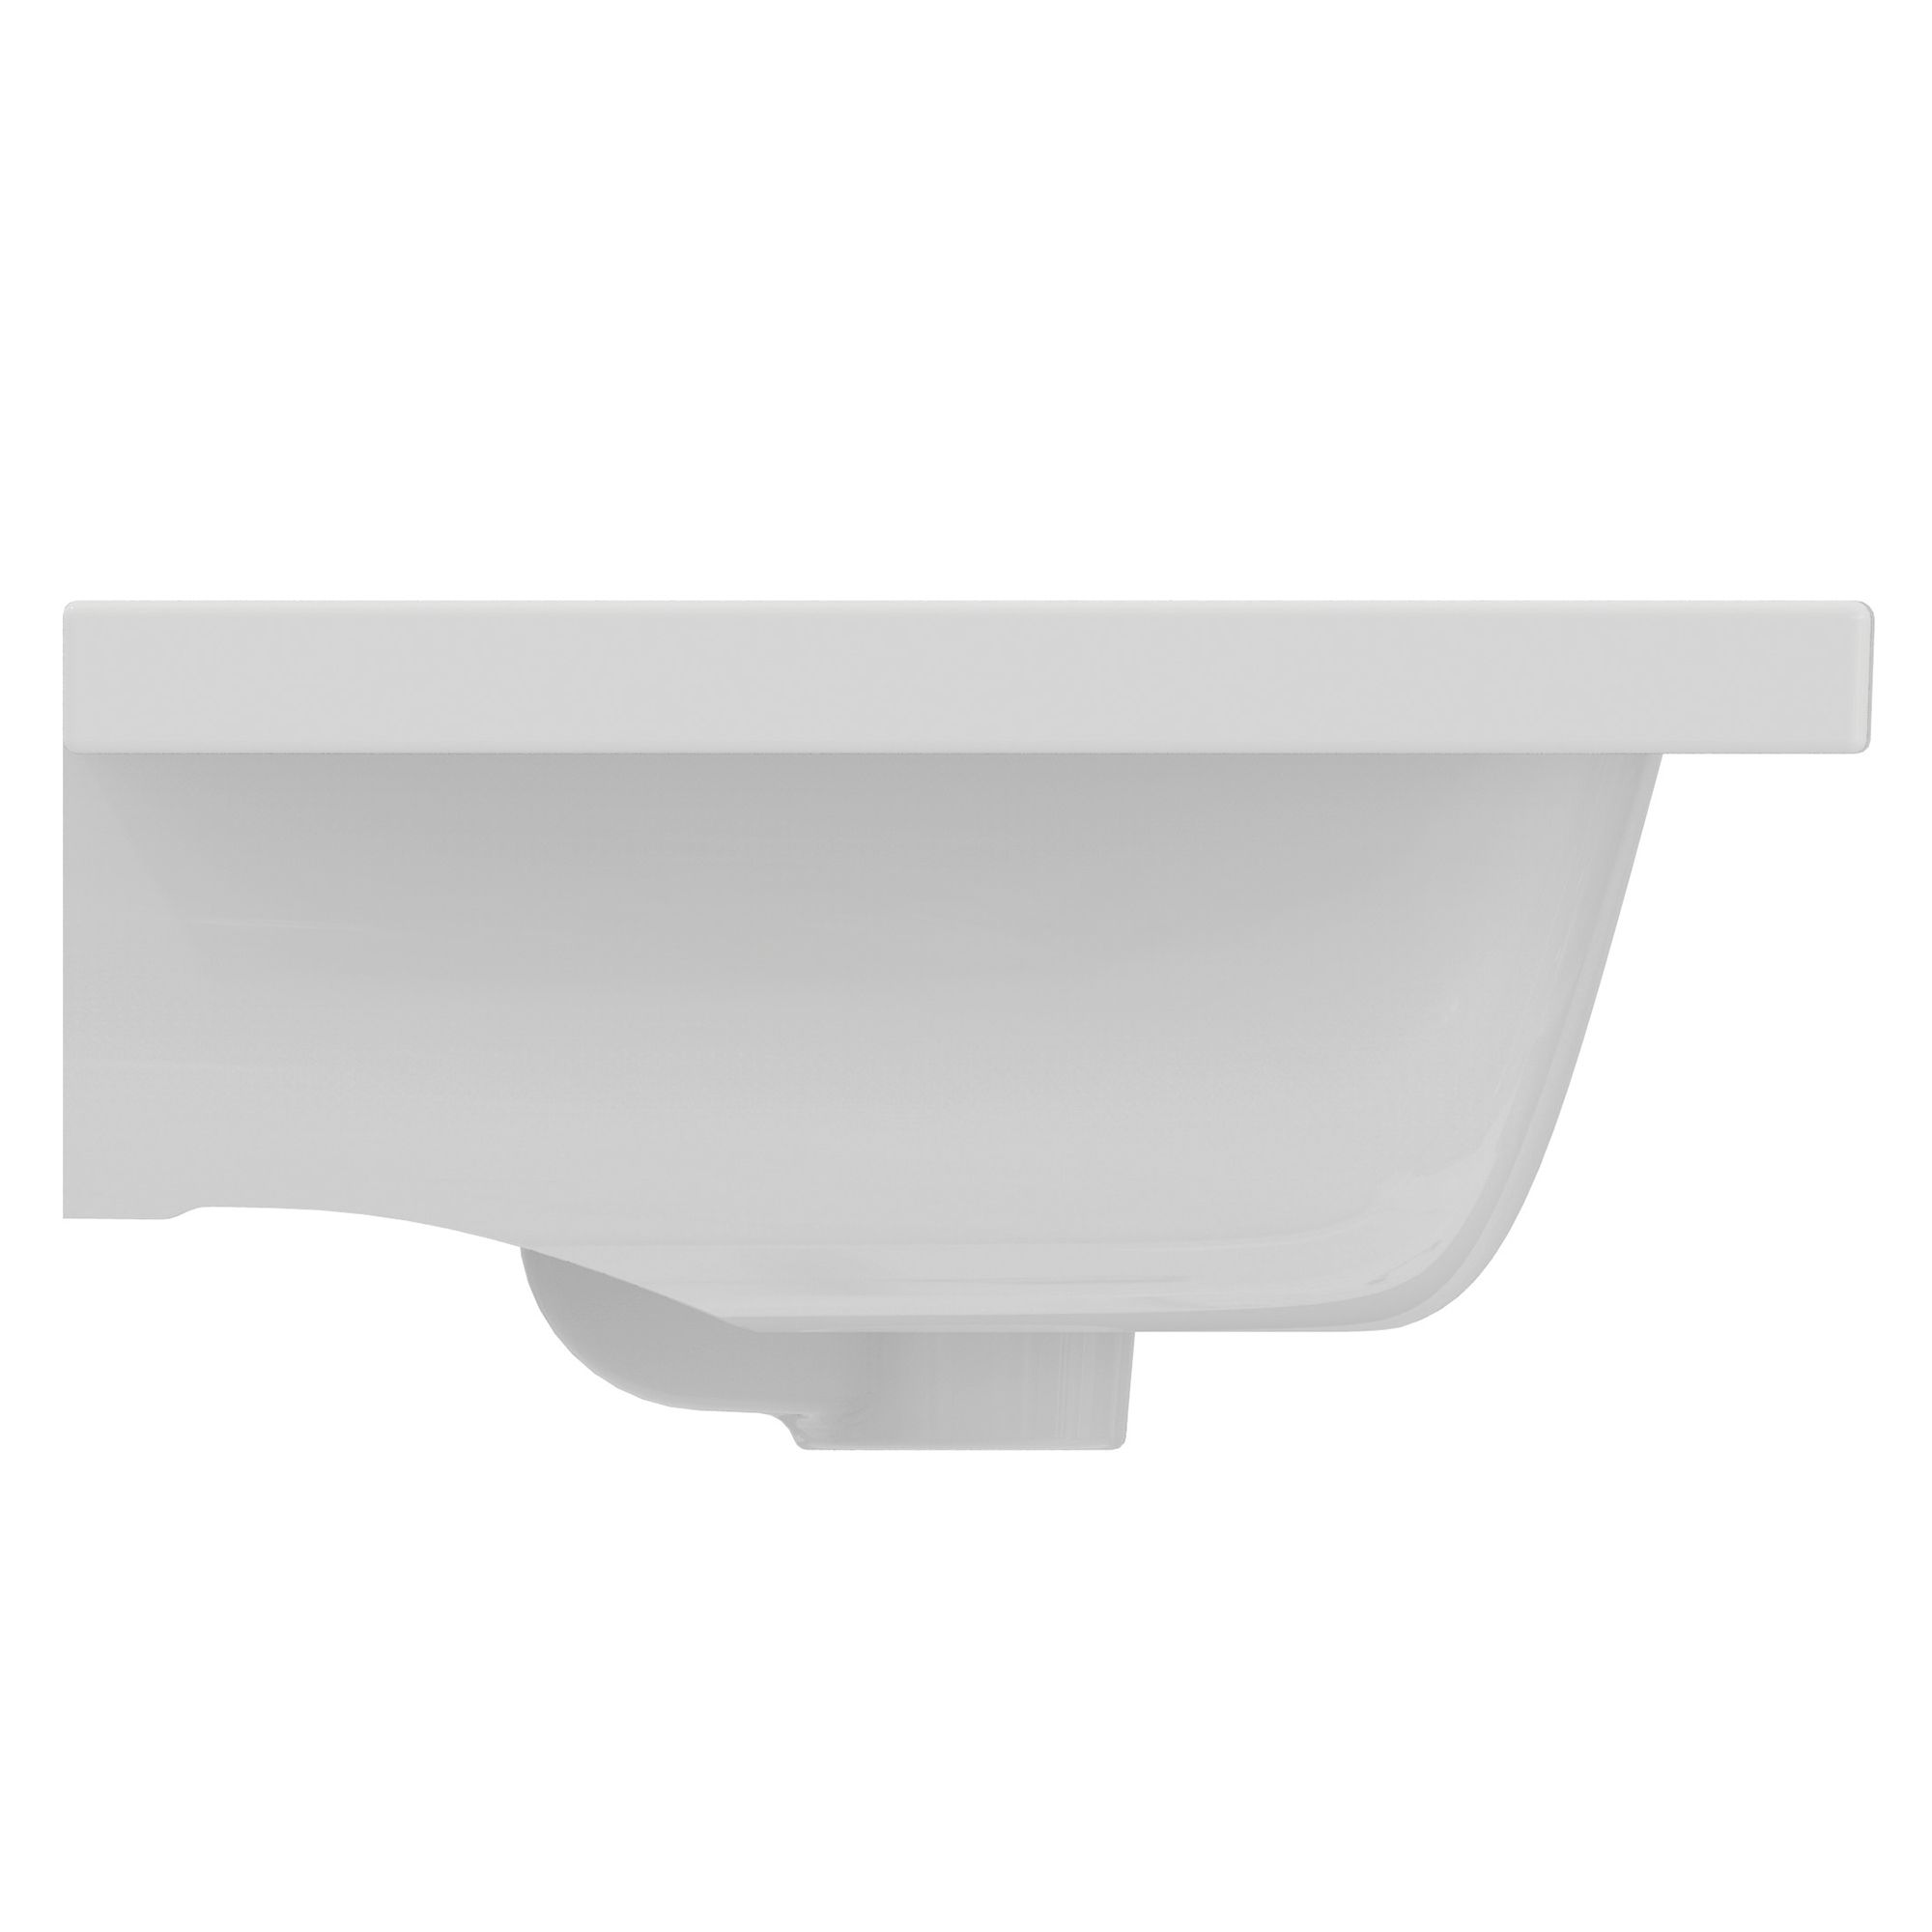 Ideal Standard i.life S Gloss White Rectangular Vanity Basin (W)60cm